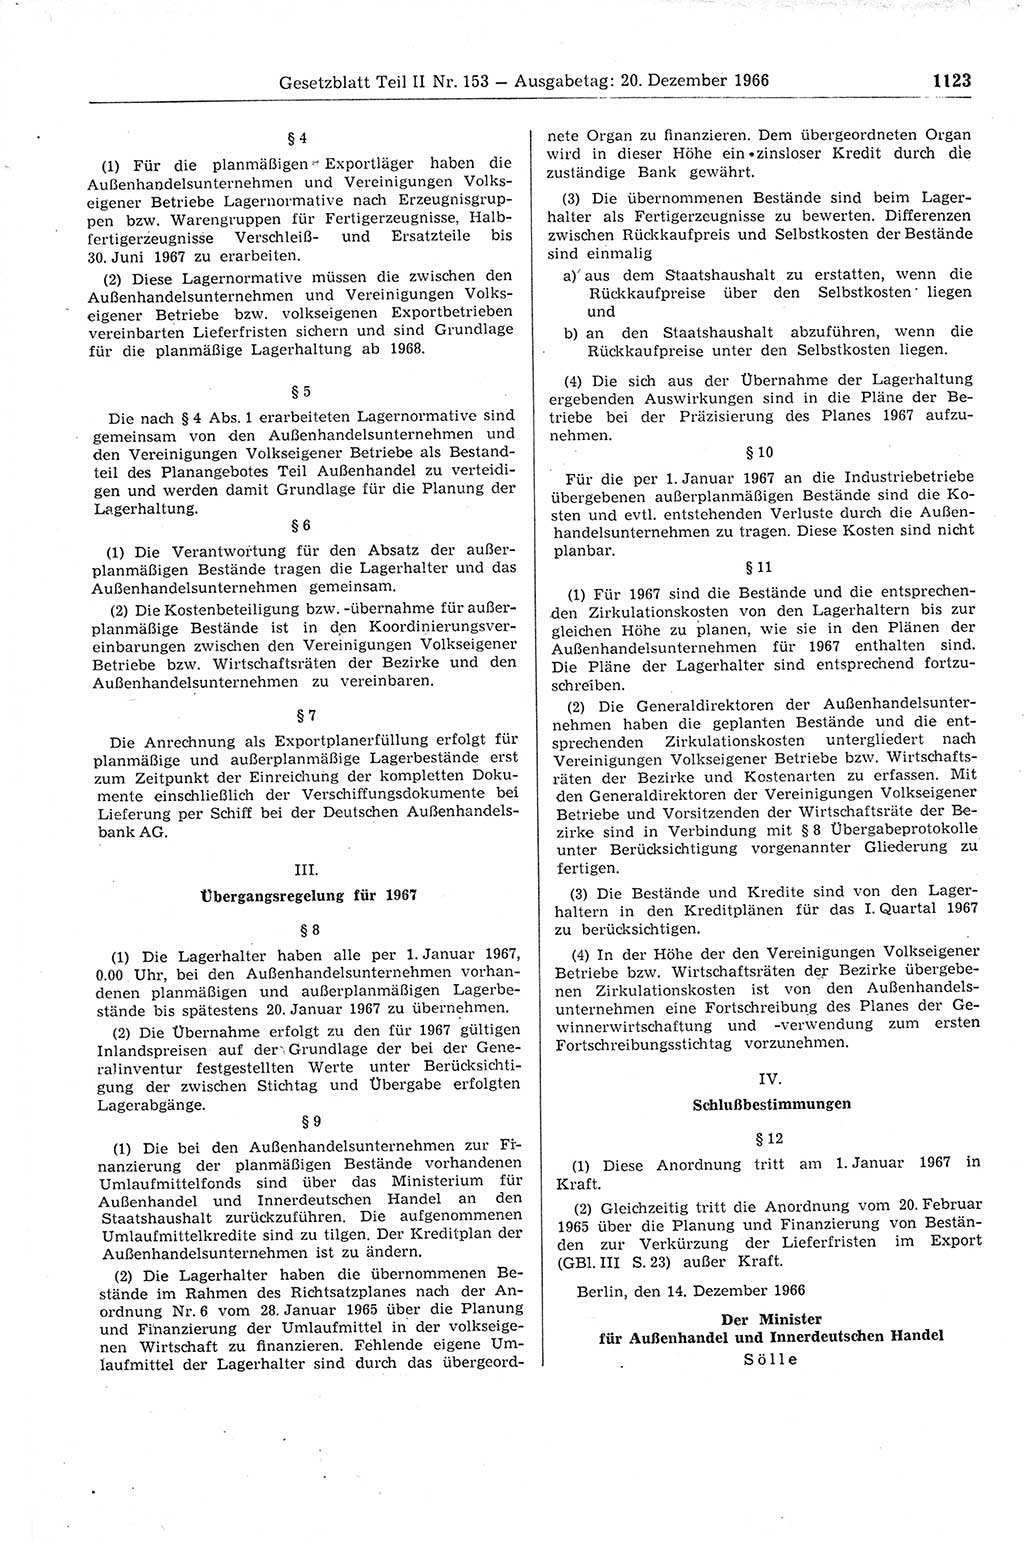 Gesetzblatt (GBl.) der Deutschen Demokratischen Republik (DDR) Teil ⅠⅠ 1966, Seite 1123 (GBl. DDR ⅠⅠ 1966, S. 1123)